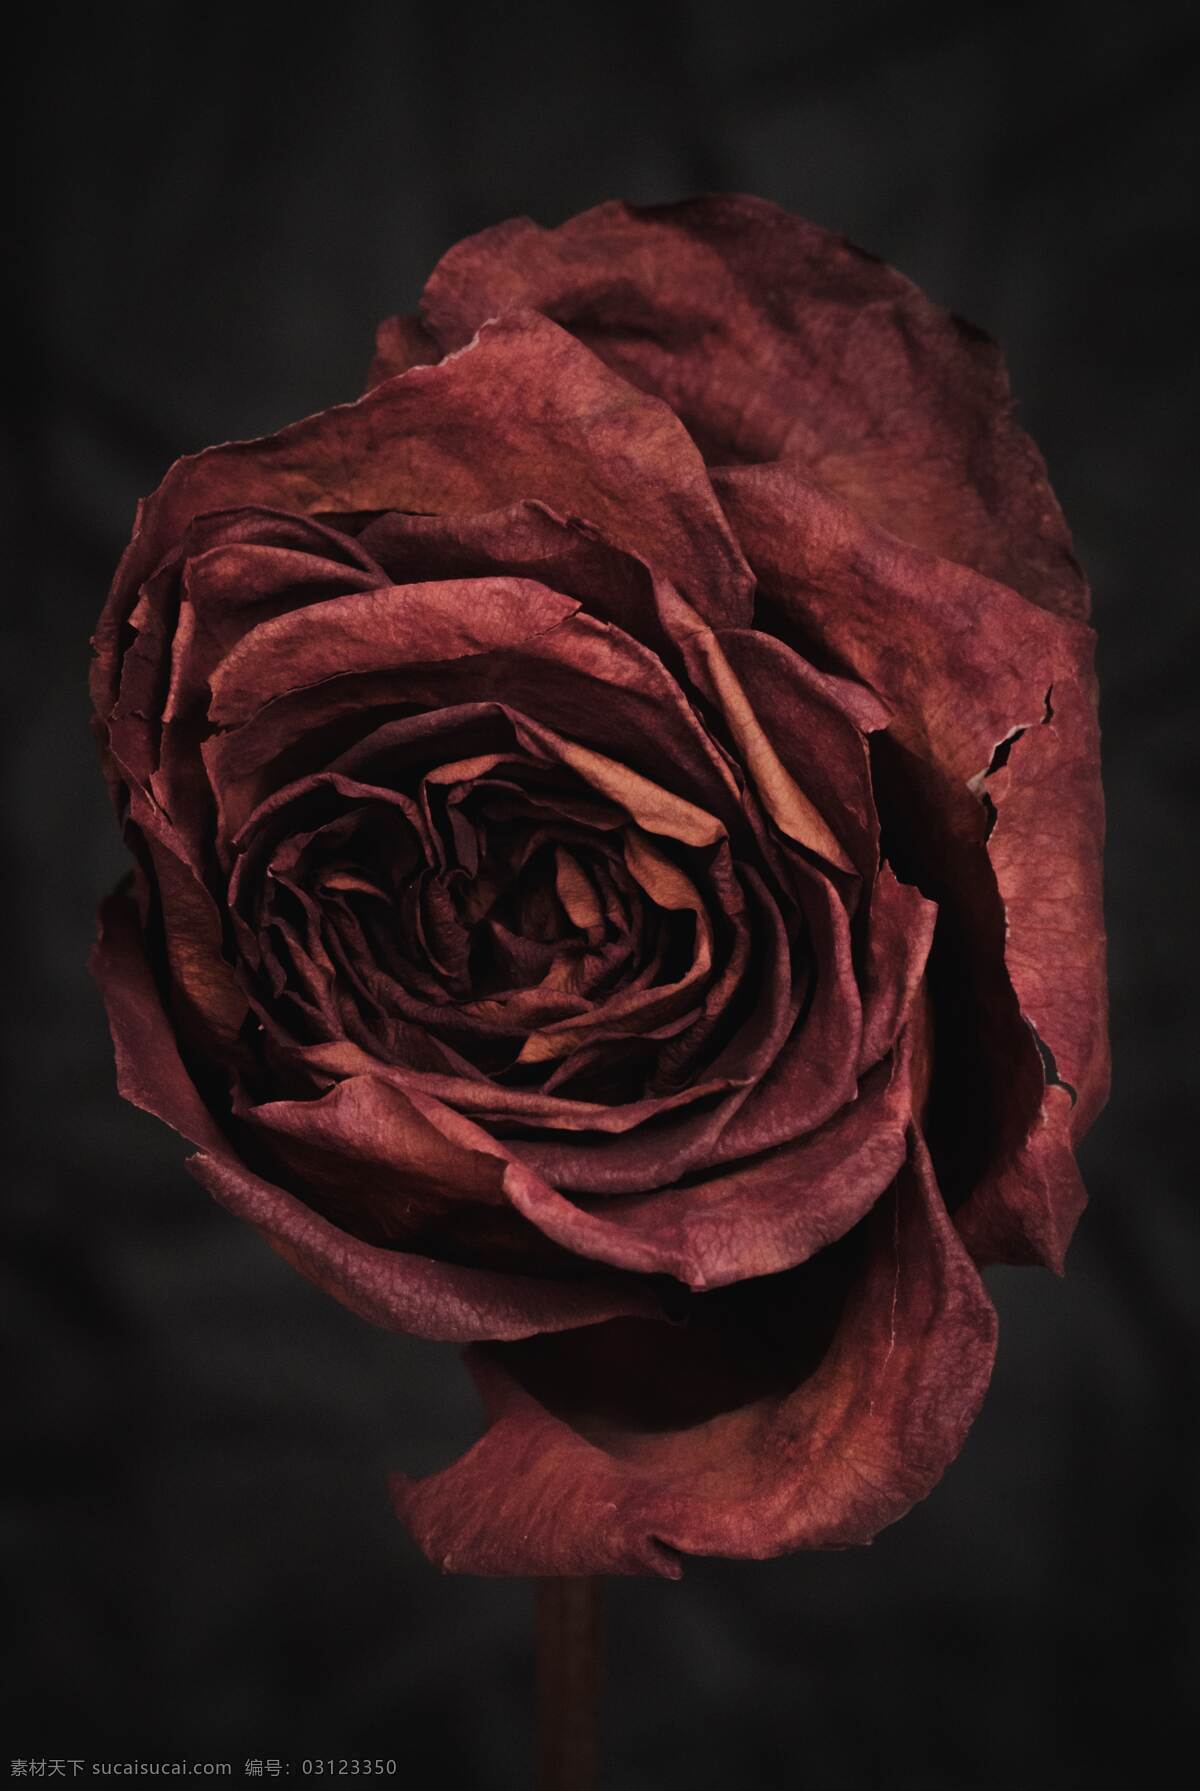 月季 玫瑰 红玫瑰 欧月 花朵图片 花朵 鲜花 蔷薇 花 唯美背景 浪漫背景 小清新 节日花朵 生物世界 花草